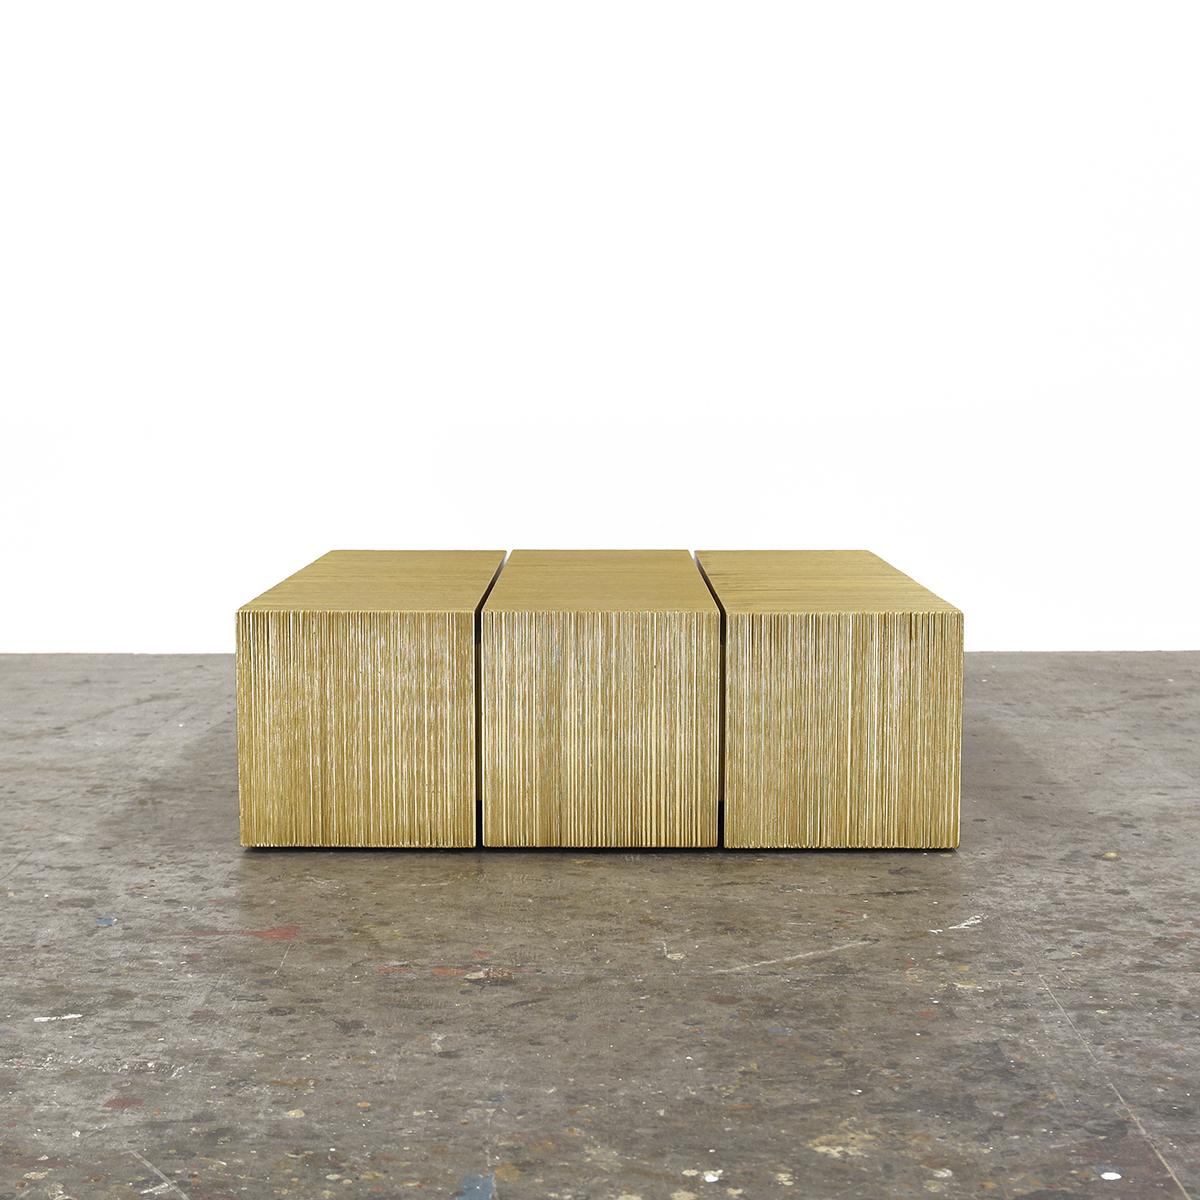 Oro, eine neue Serie von John Eric Byers, markiert die 30. Einzelausstellung des Künstlers. Ein elegantes Gleichgewicht der Kontraste nimmt in diesen visuell beeindruckenden Werken Gestalt an. Die Holzblöcke werden in akribischer Handarbeit zu einem